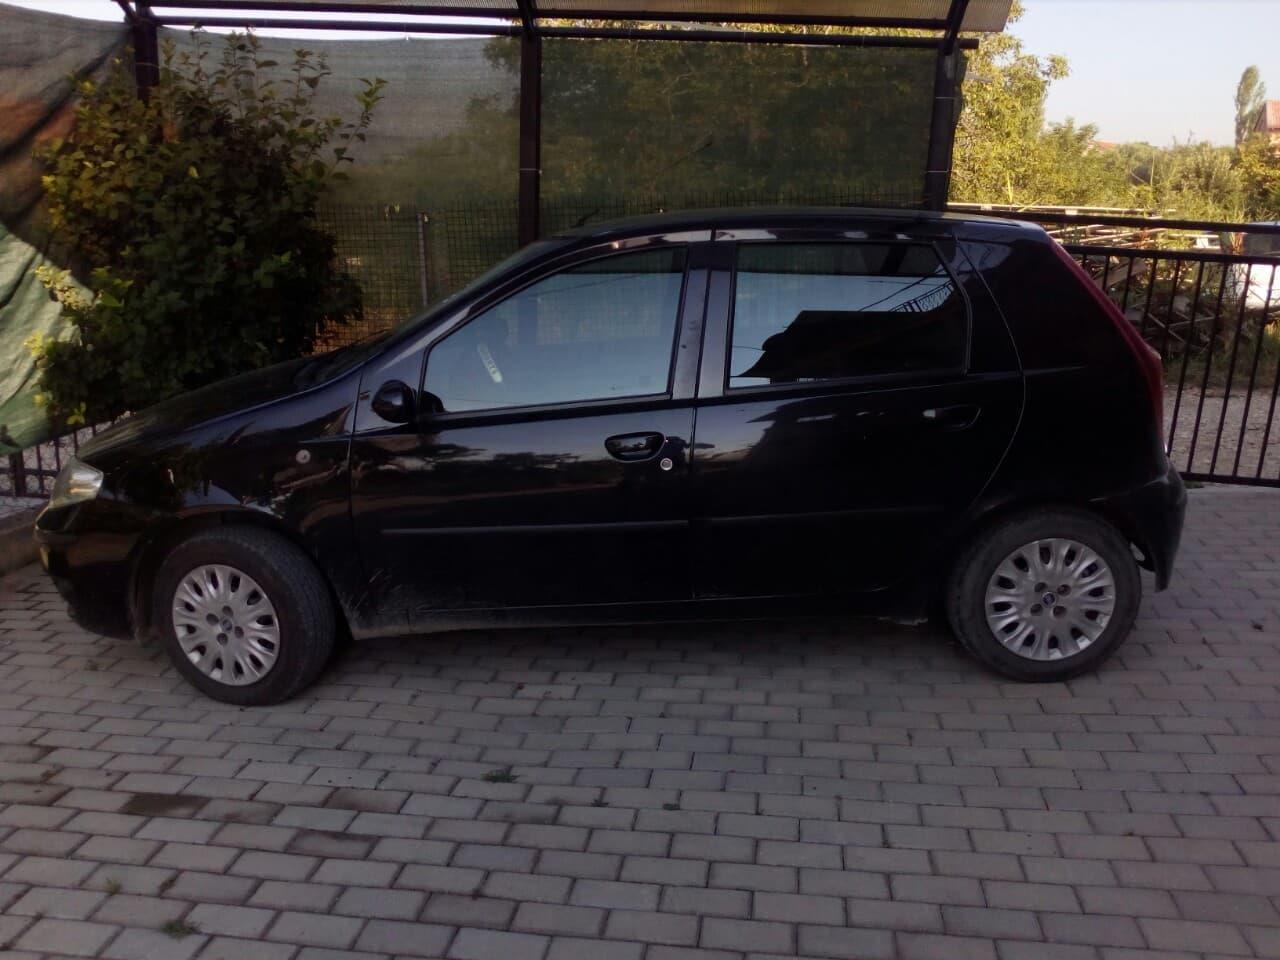 Fiat Punto cena po dogovor Скопjе